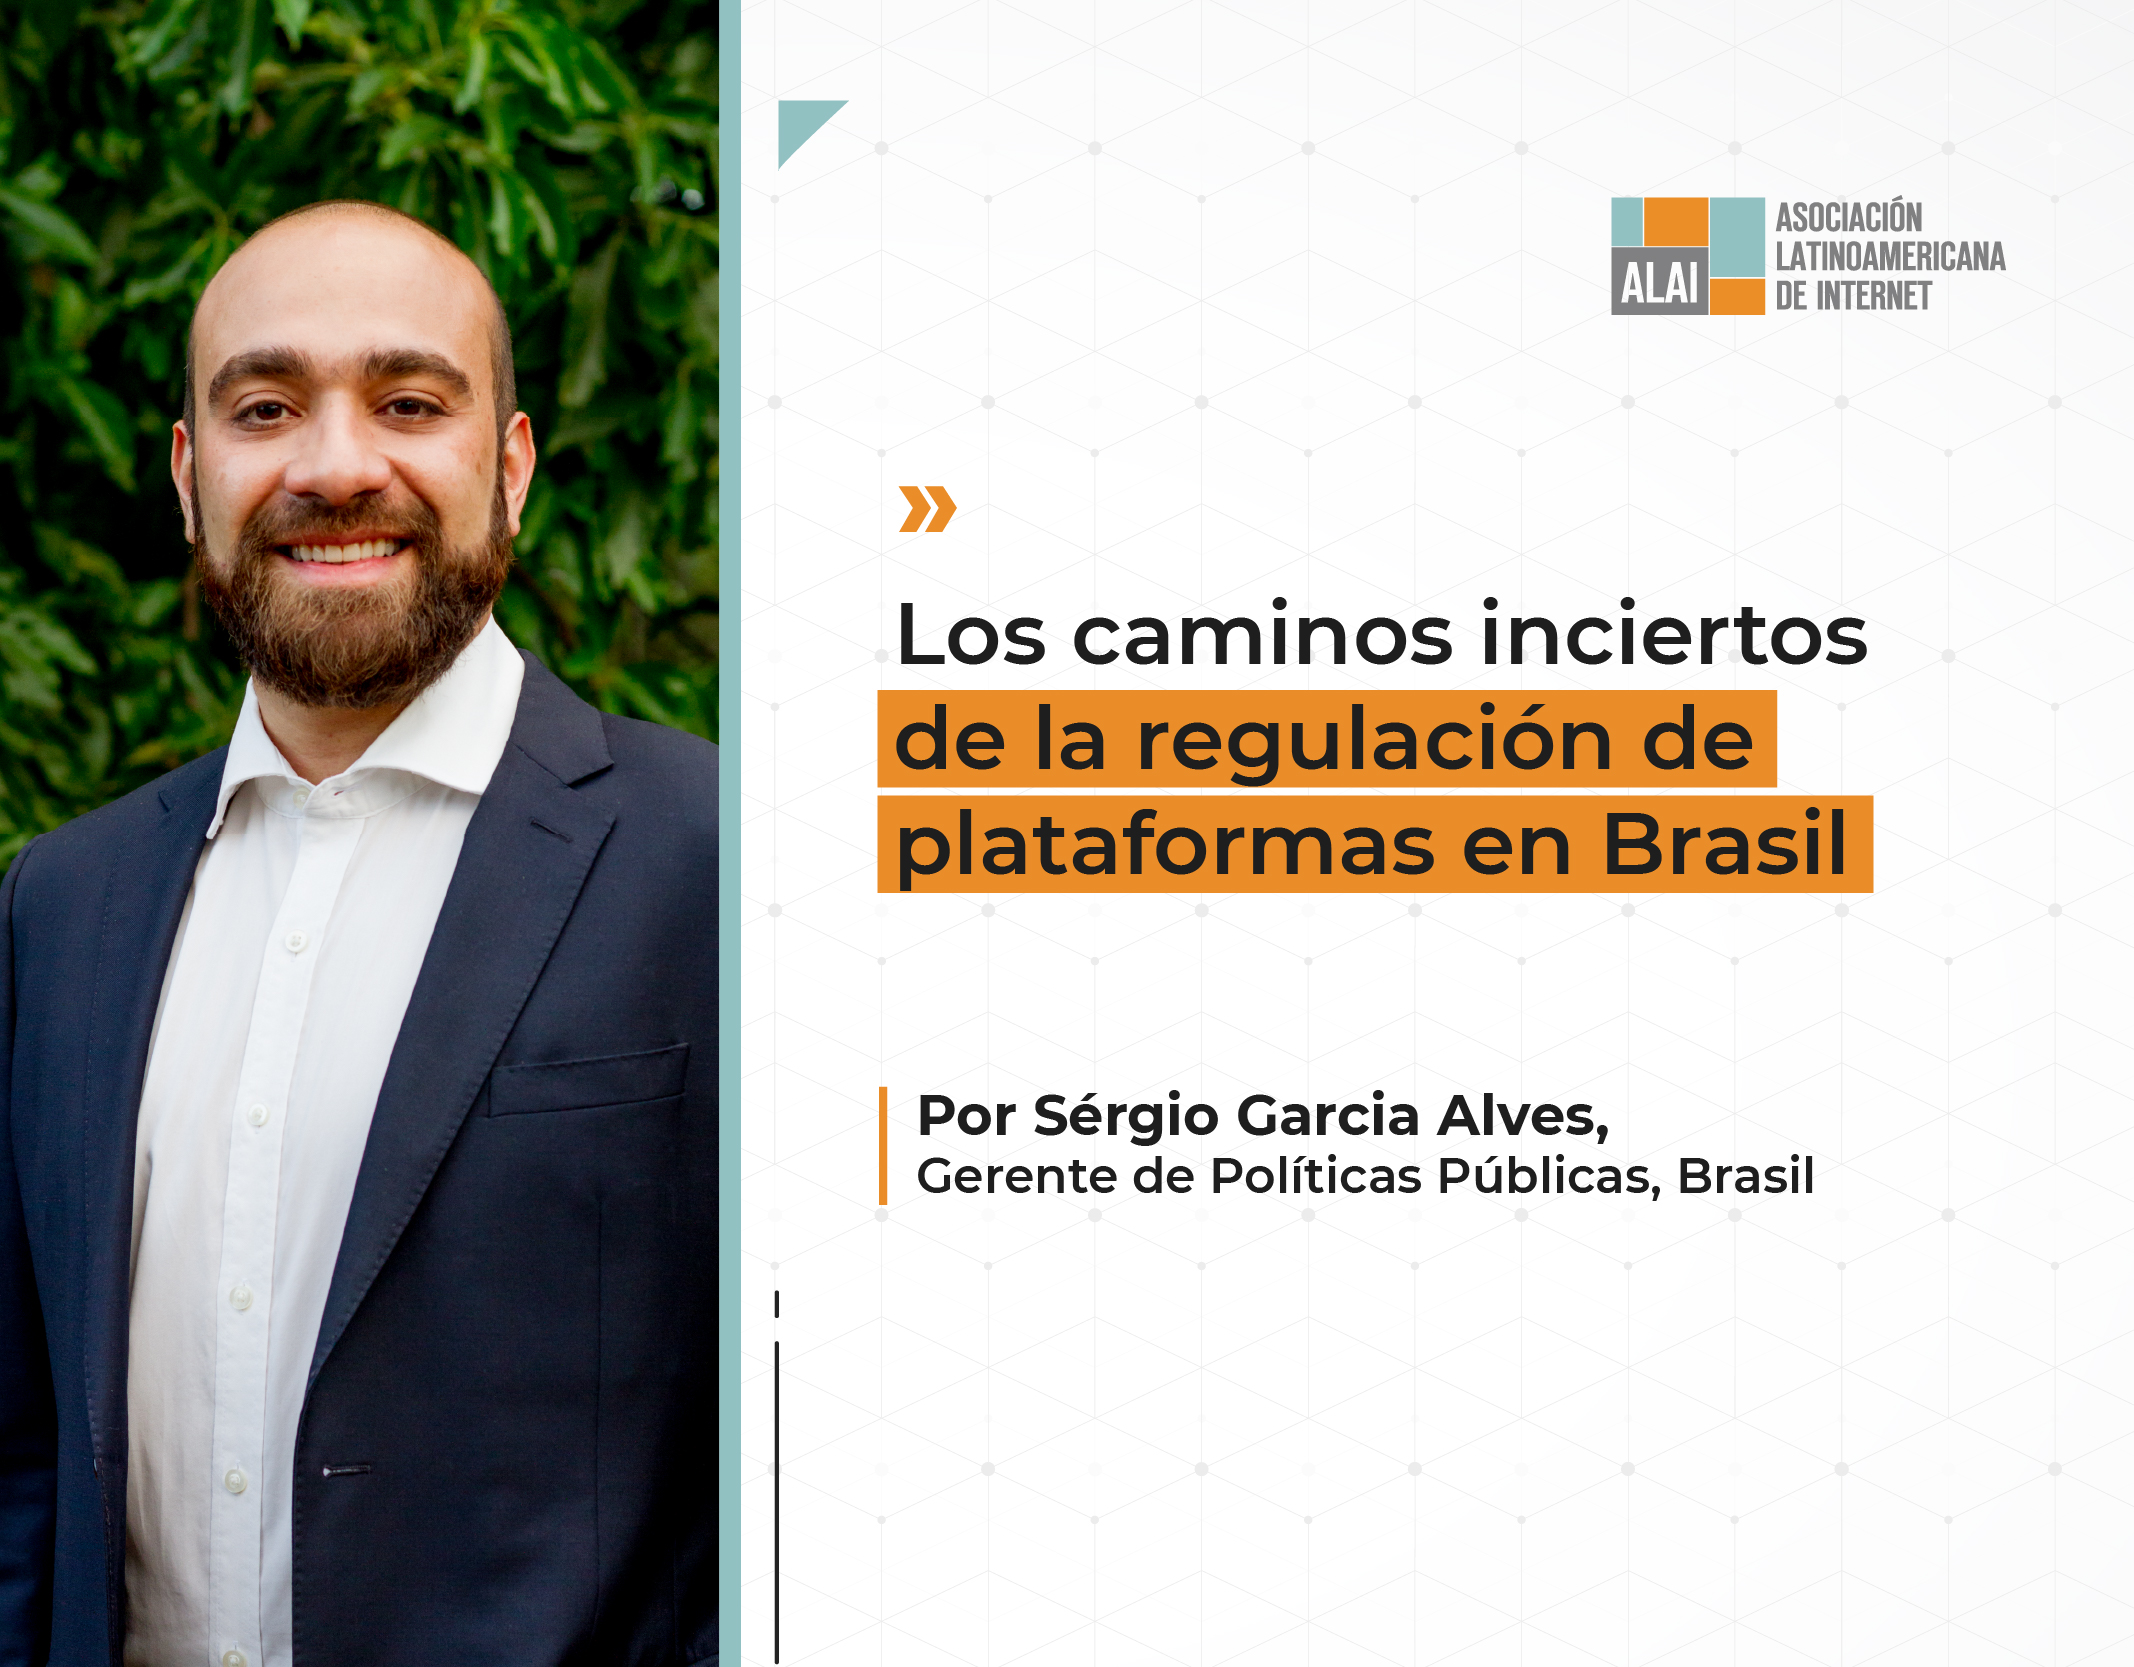 Los caminos inciertos de la regulación de plataformas en Brasil